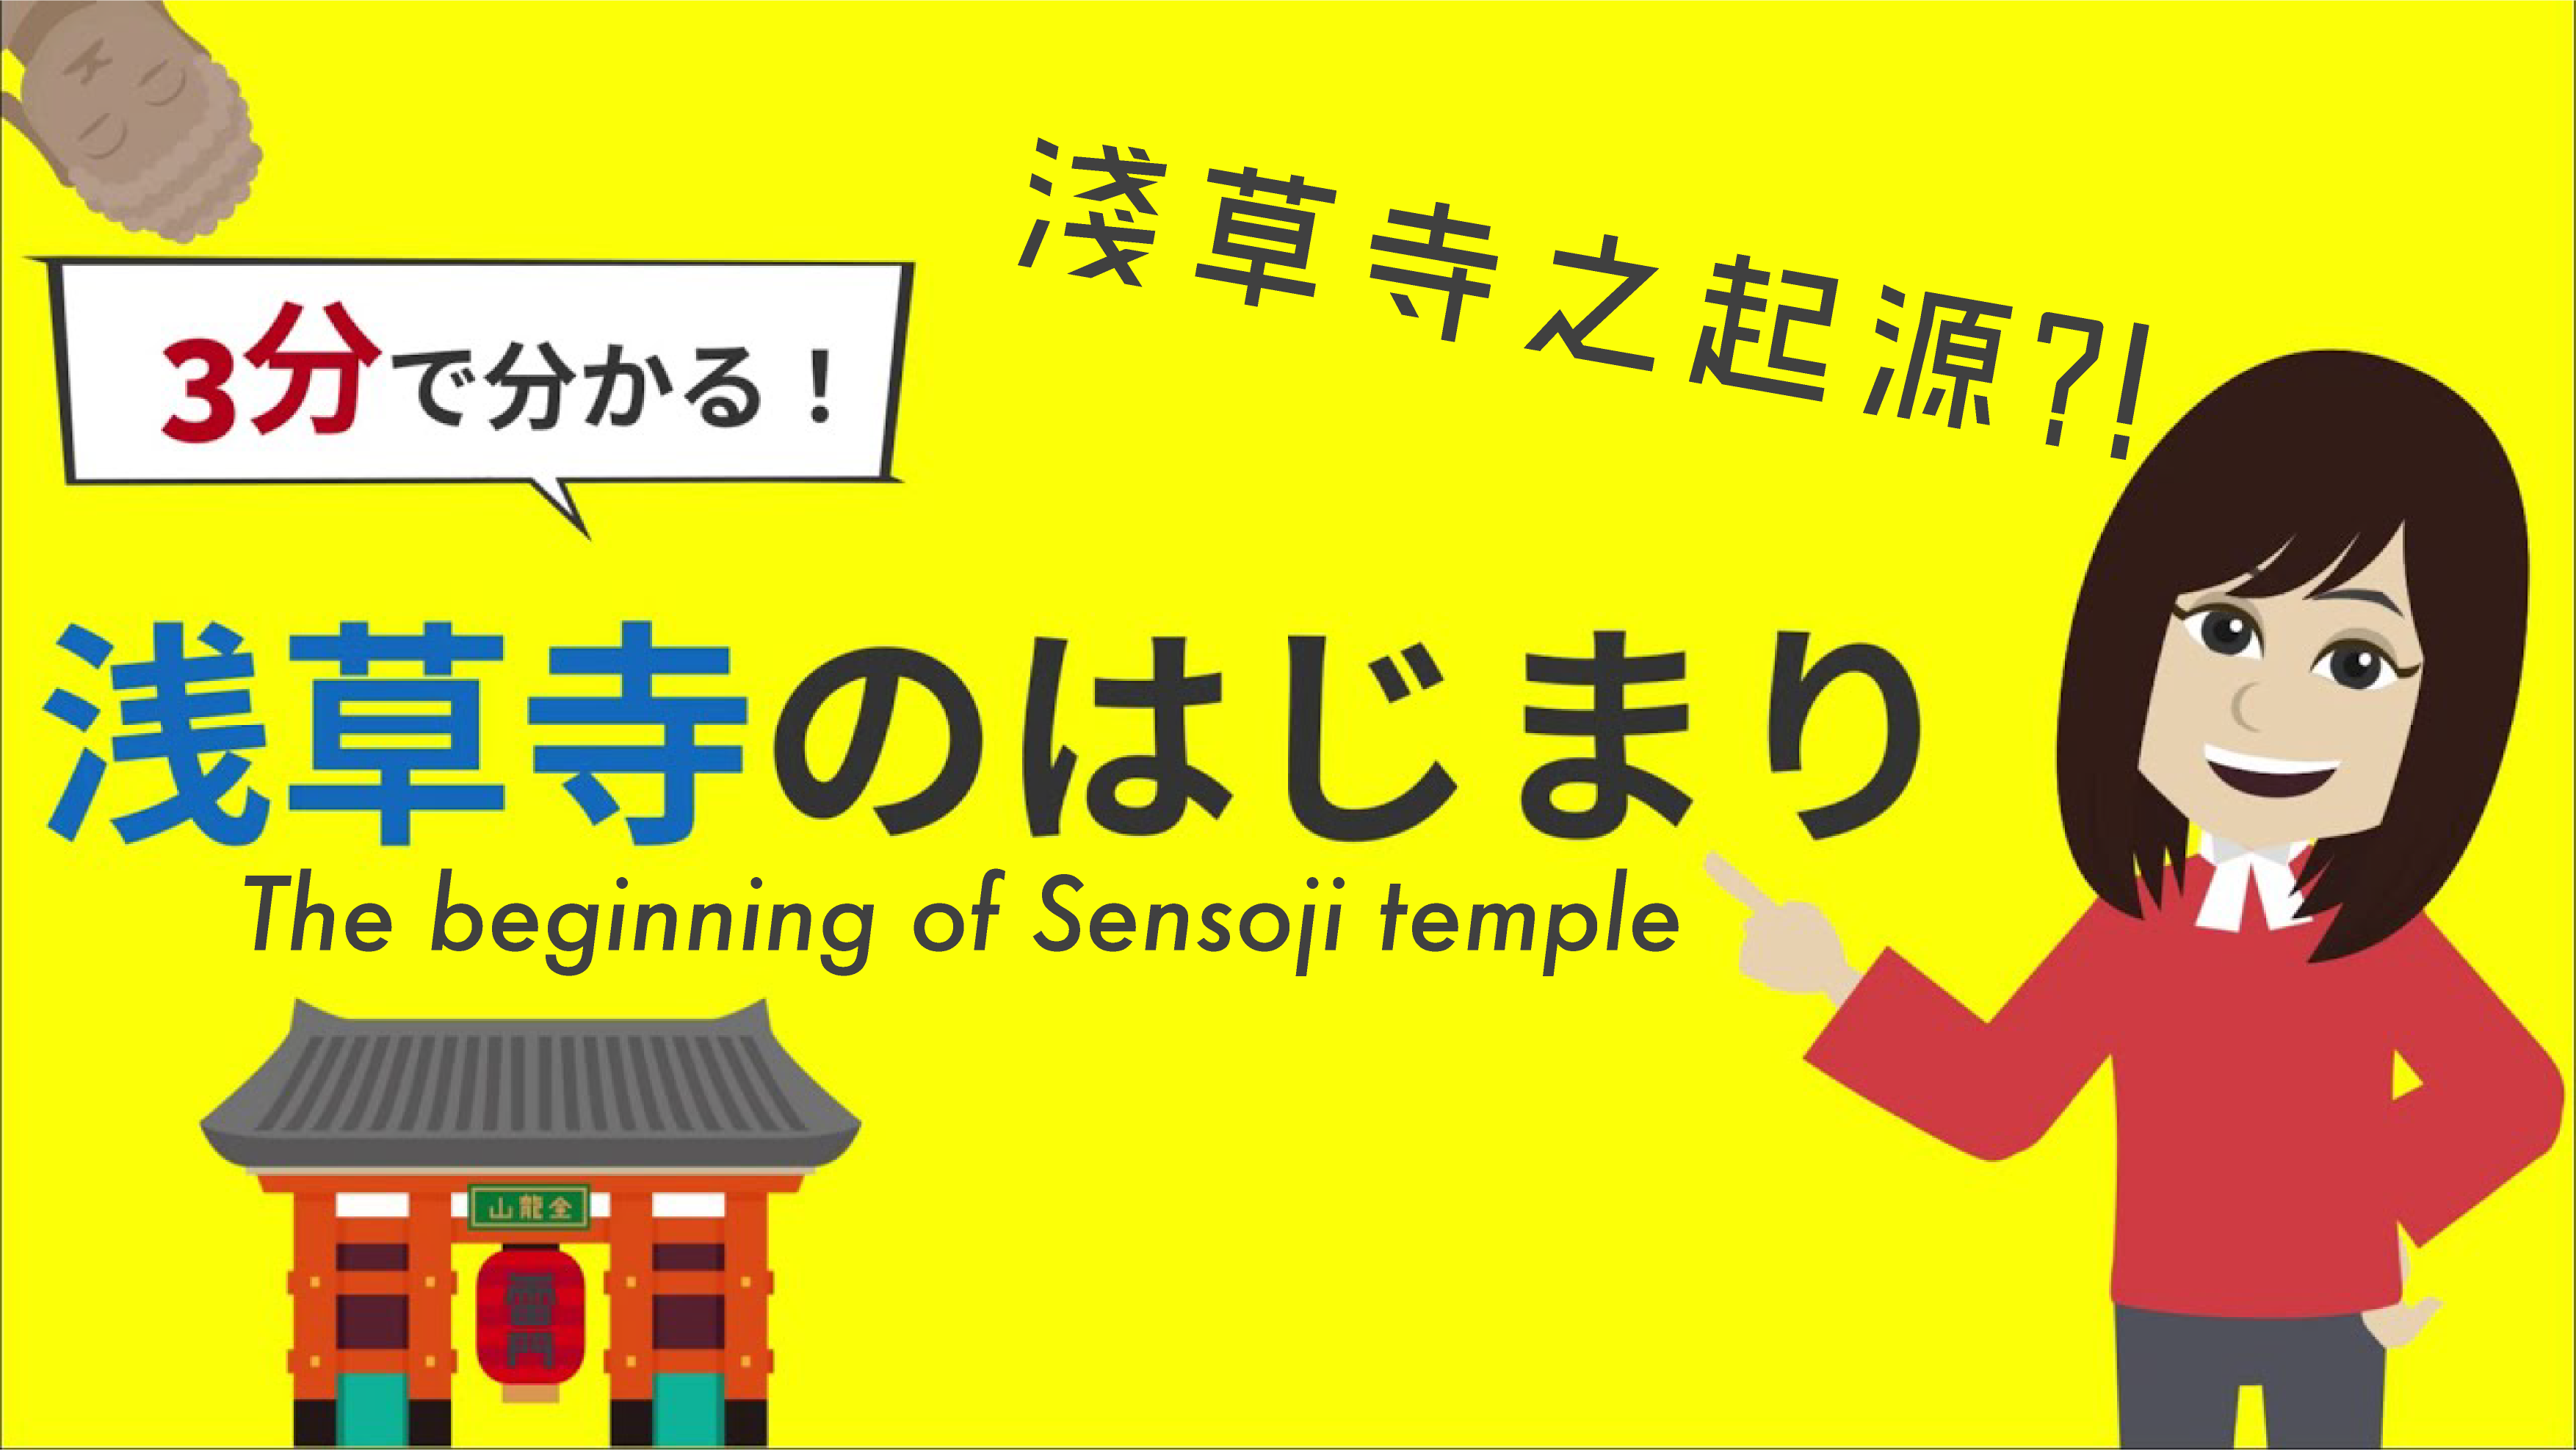 浅草の歴史シリーズ「浅草寺のはじまり」をアニメーションで紹介